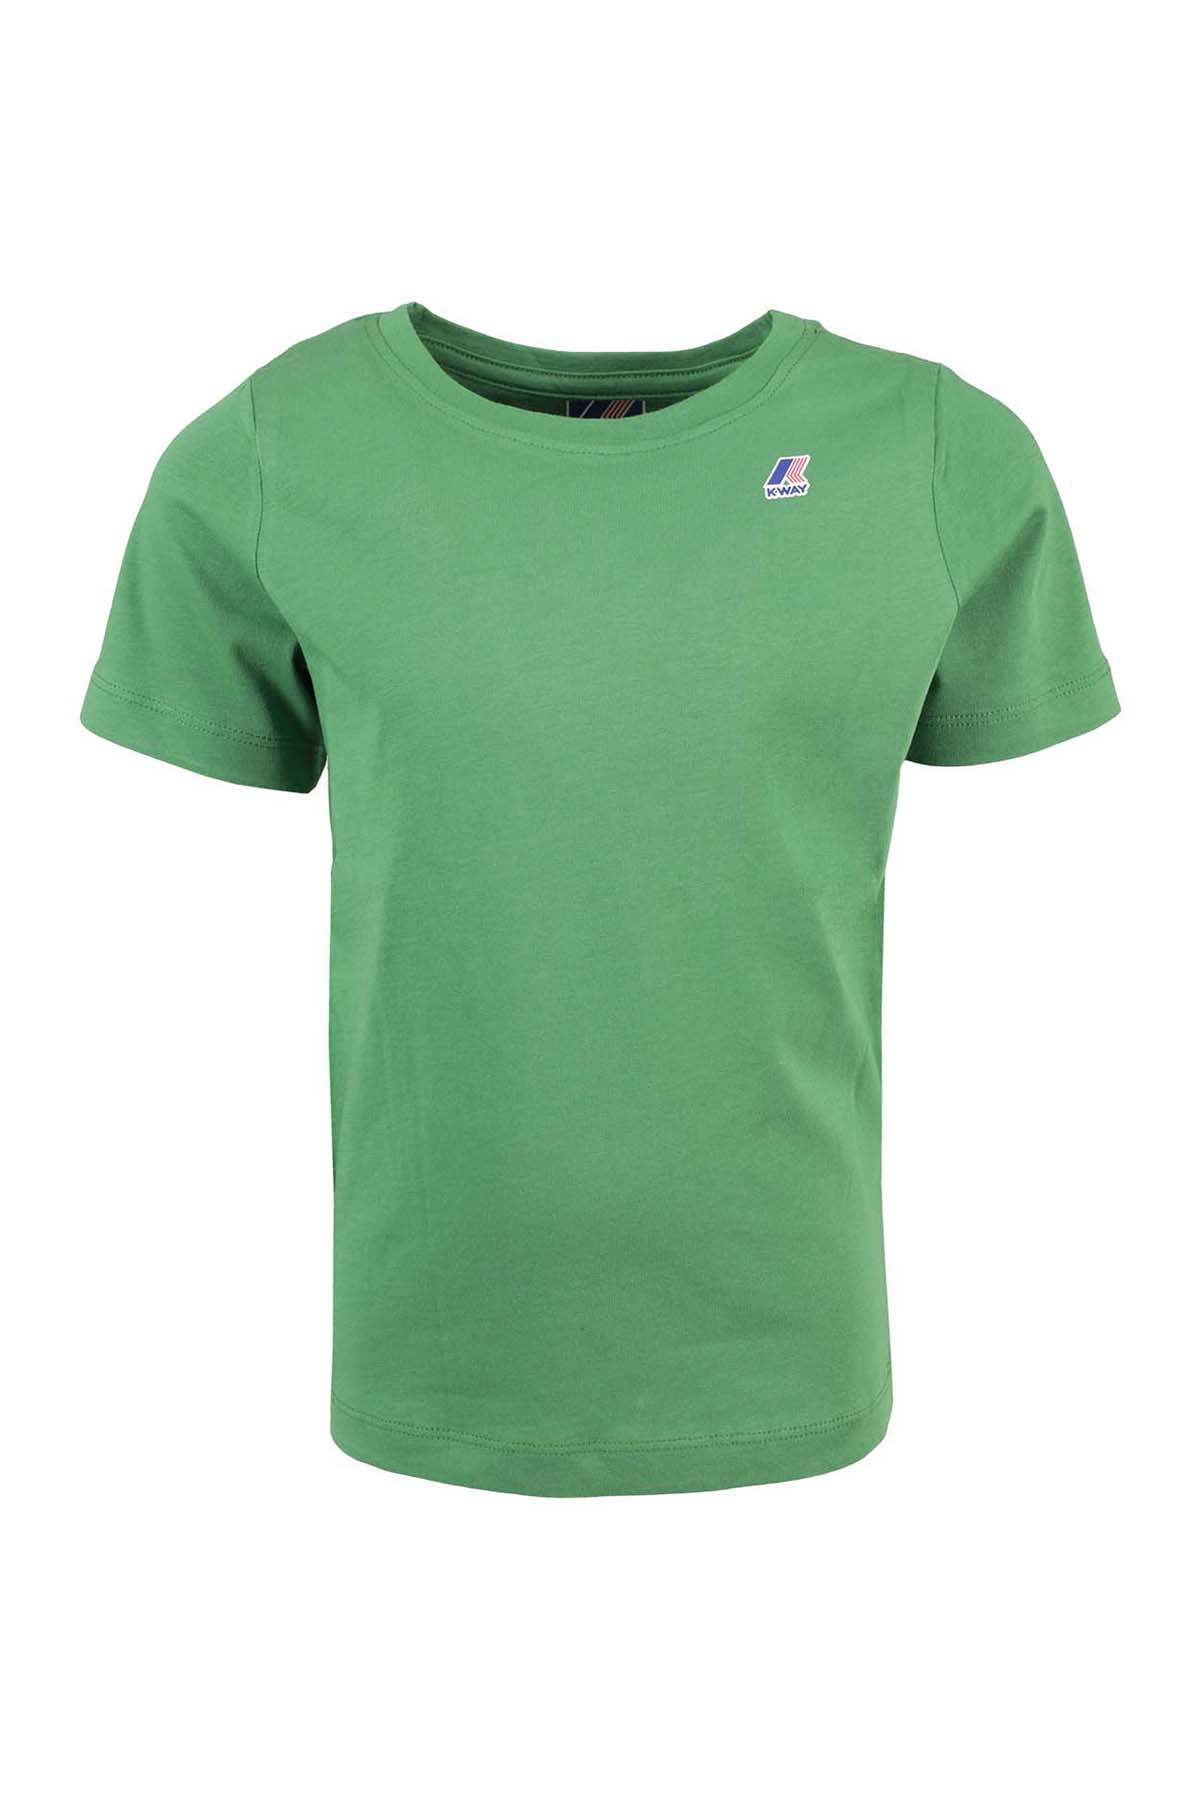 K-way Kids' T-shirt In Q Green